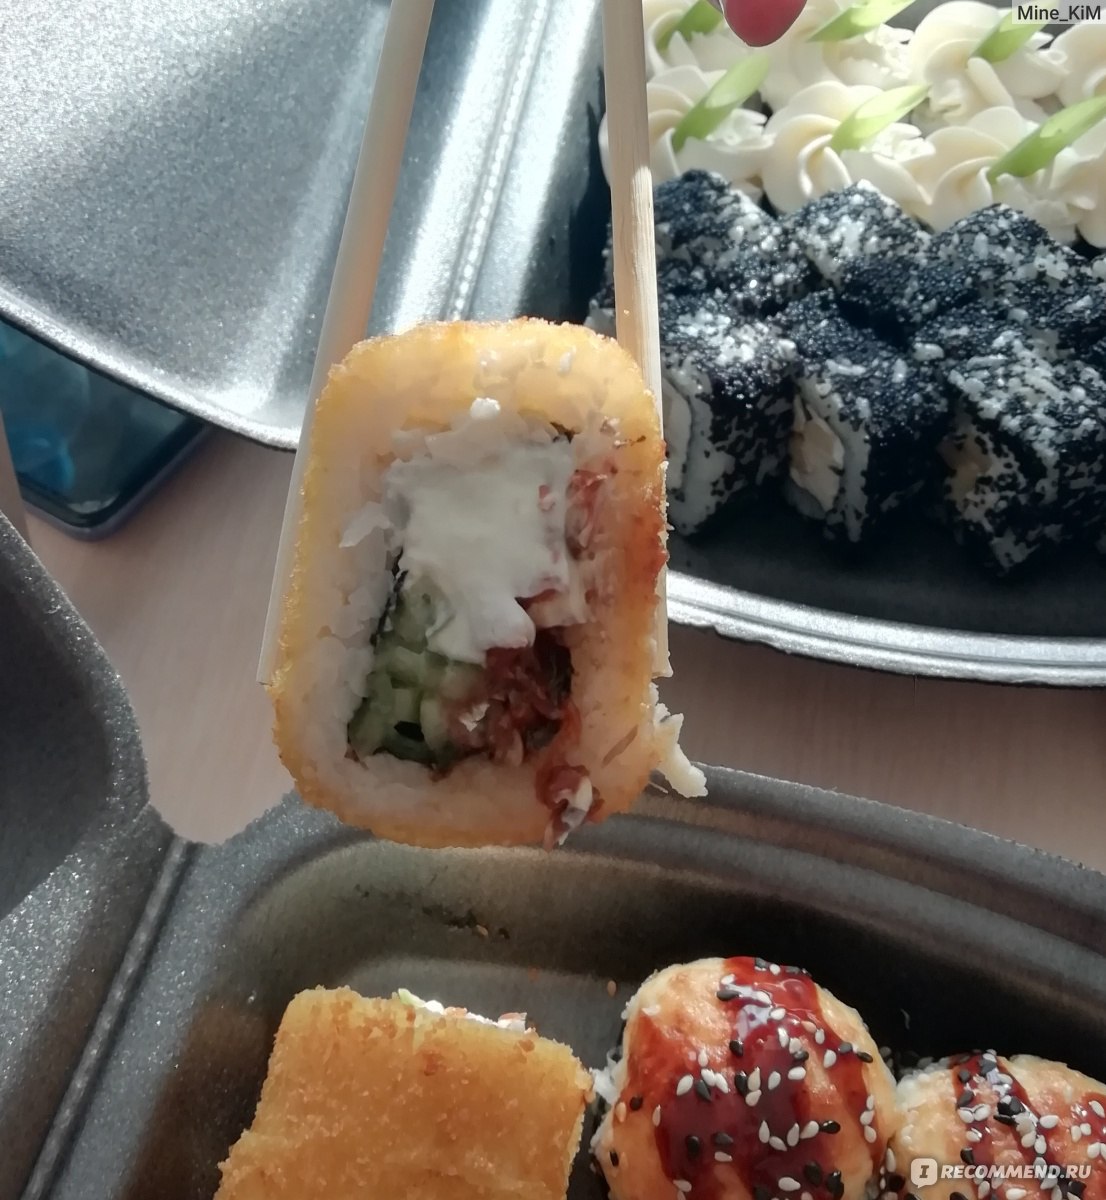 Заказать суши в челябинске суши до фото 83